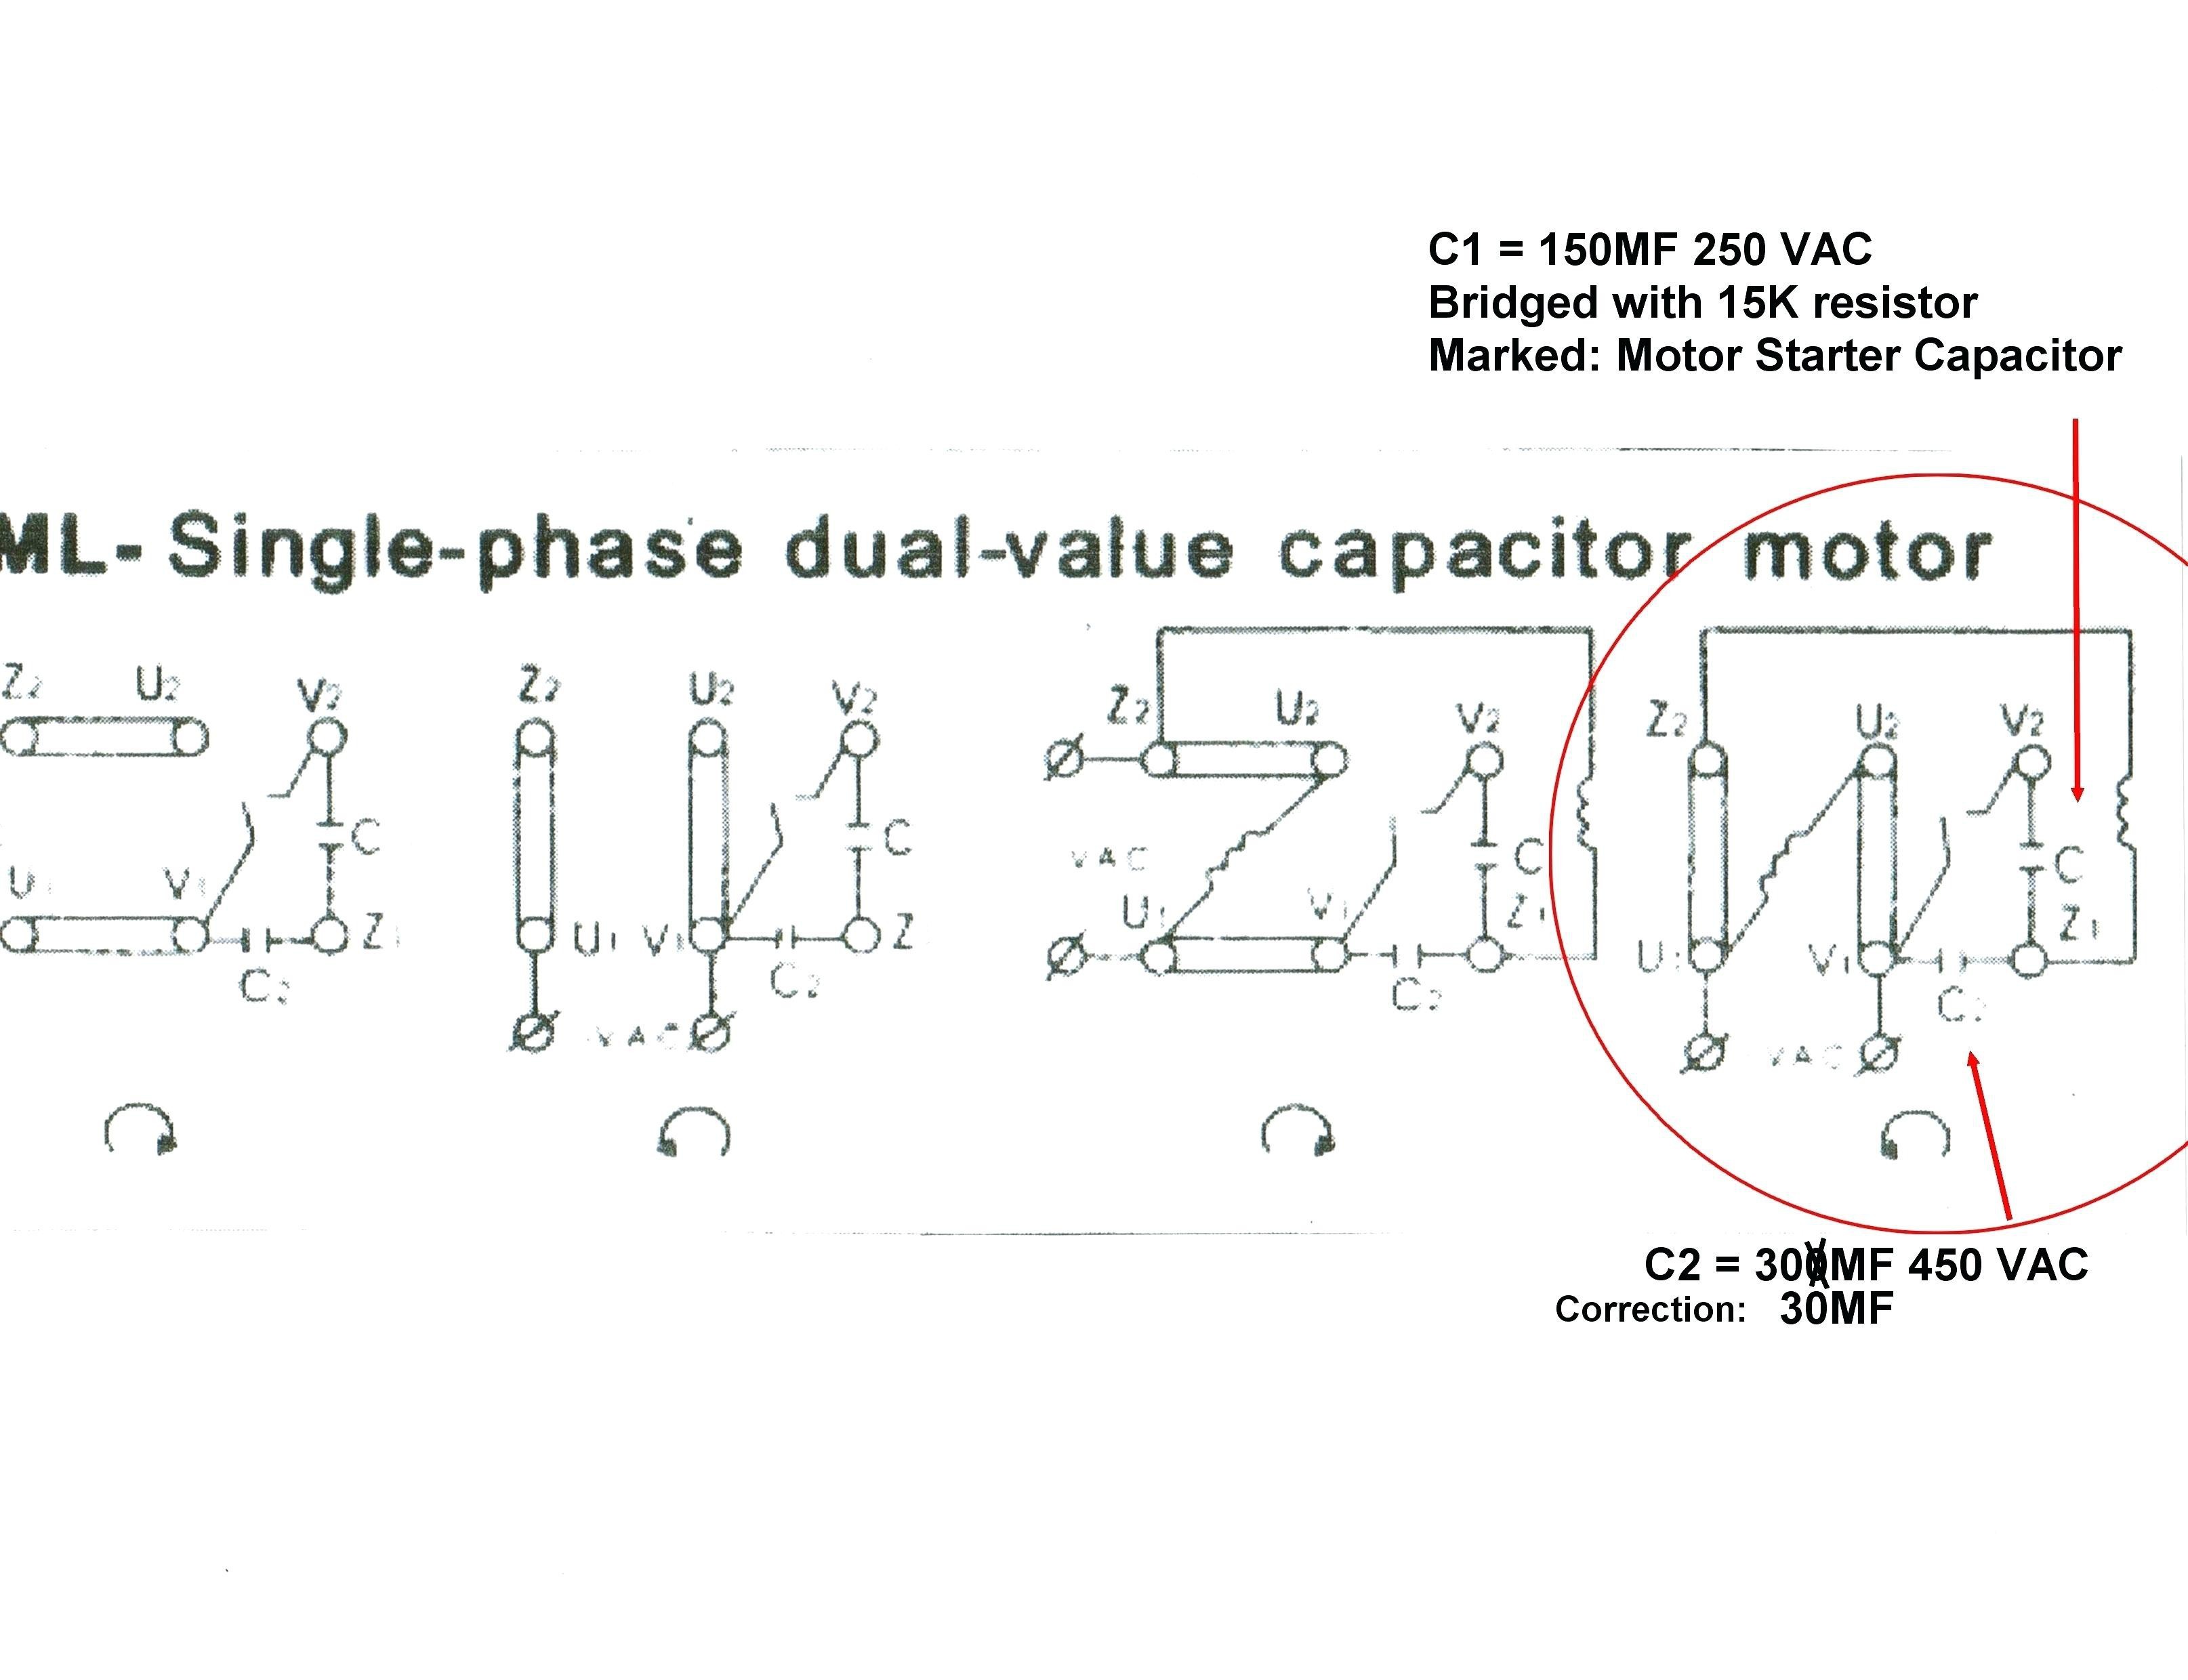 Pioneer Parking Brake bypass Wiring Diagram Awesome Pioneer Parking Brake bypass Wiring Diagram Fresh Cool Pioneer